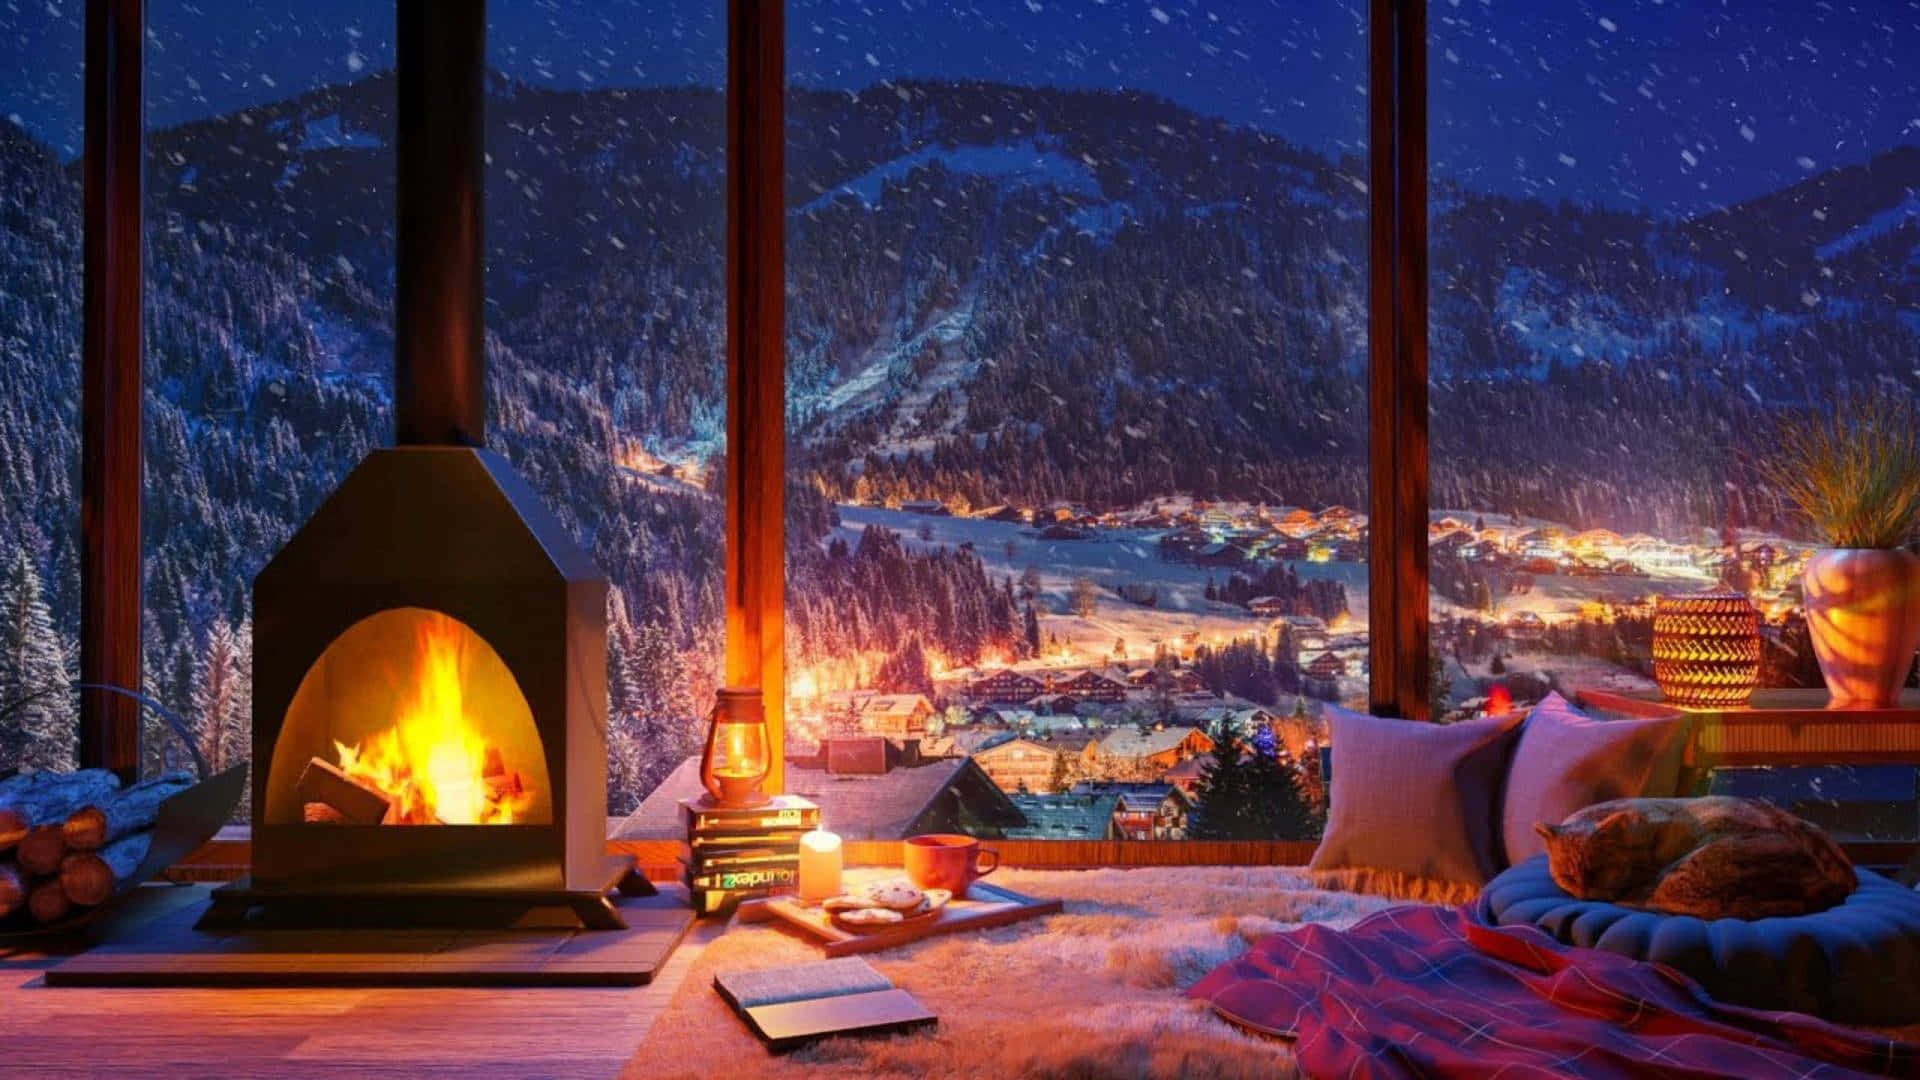 Cozy Fireplace Winter Mountain Desktop Wallpaper